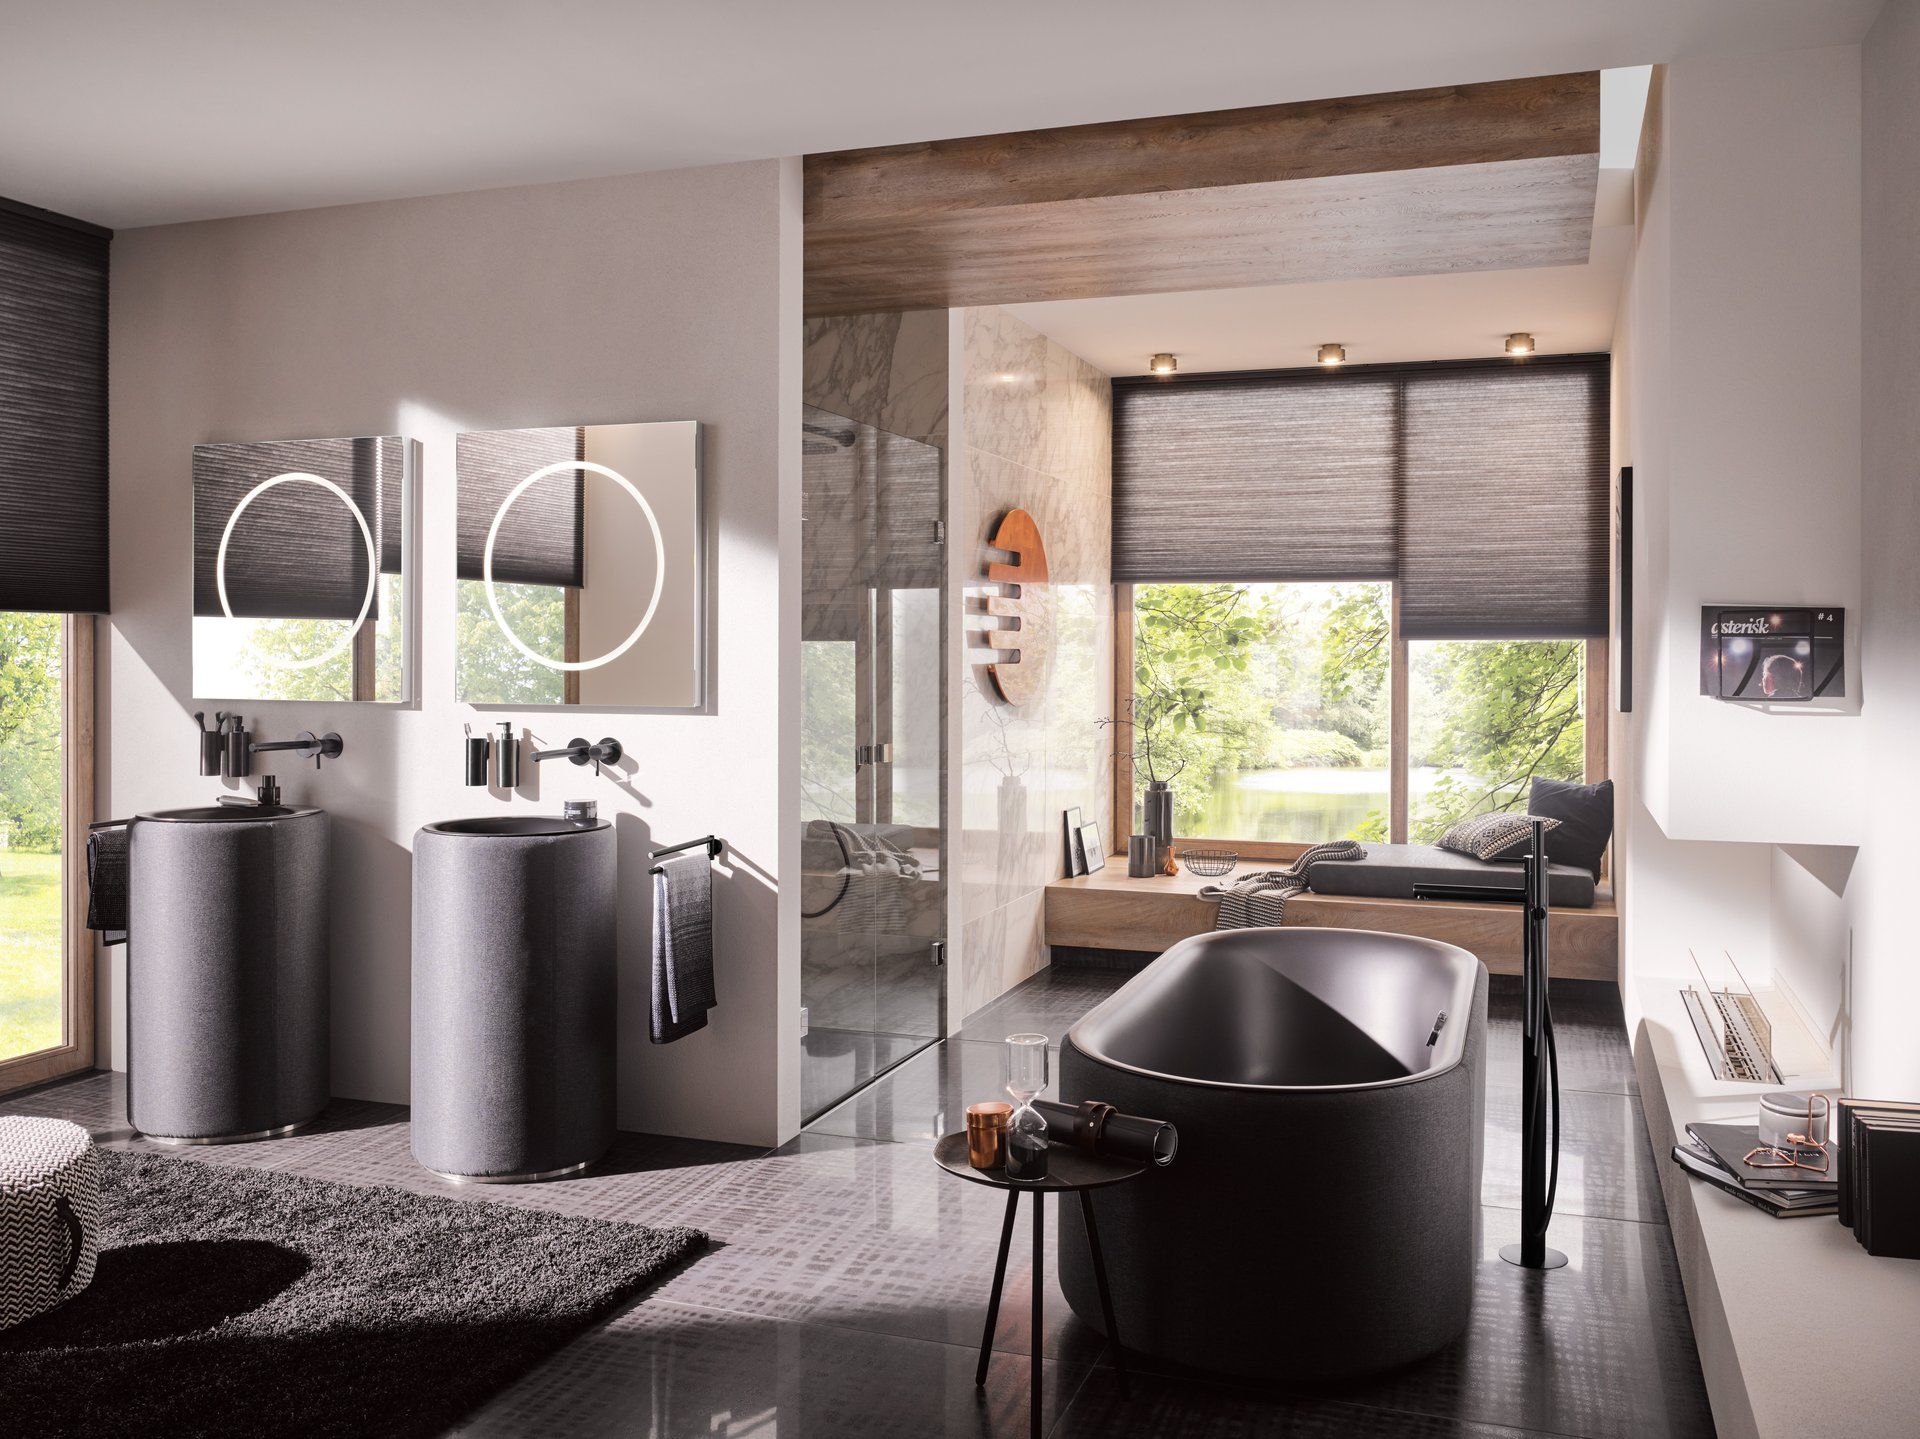 Referenzbild Galeriebild Online-Badausstellung, Sanitär in Göppingen, freistehende Badewanne, zwei Waschtische, Sitzgelegenheit am Fenster mit Jalousette